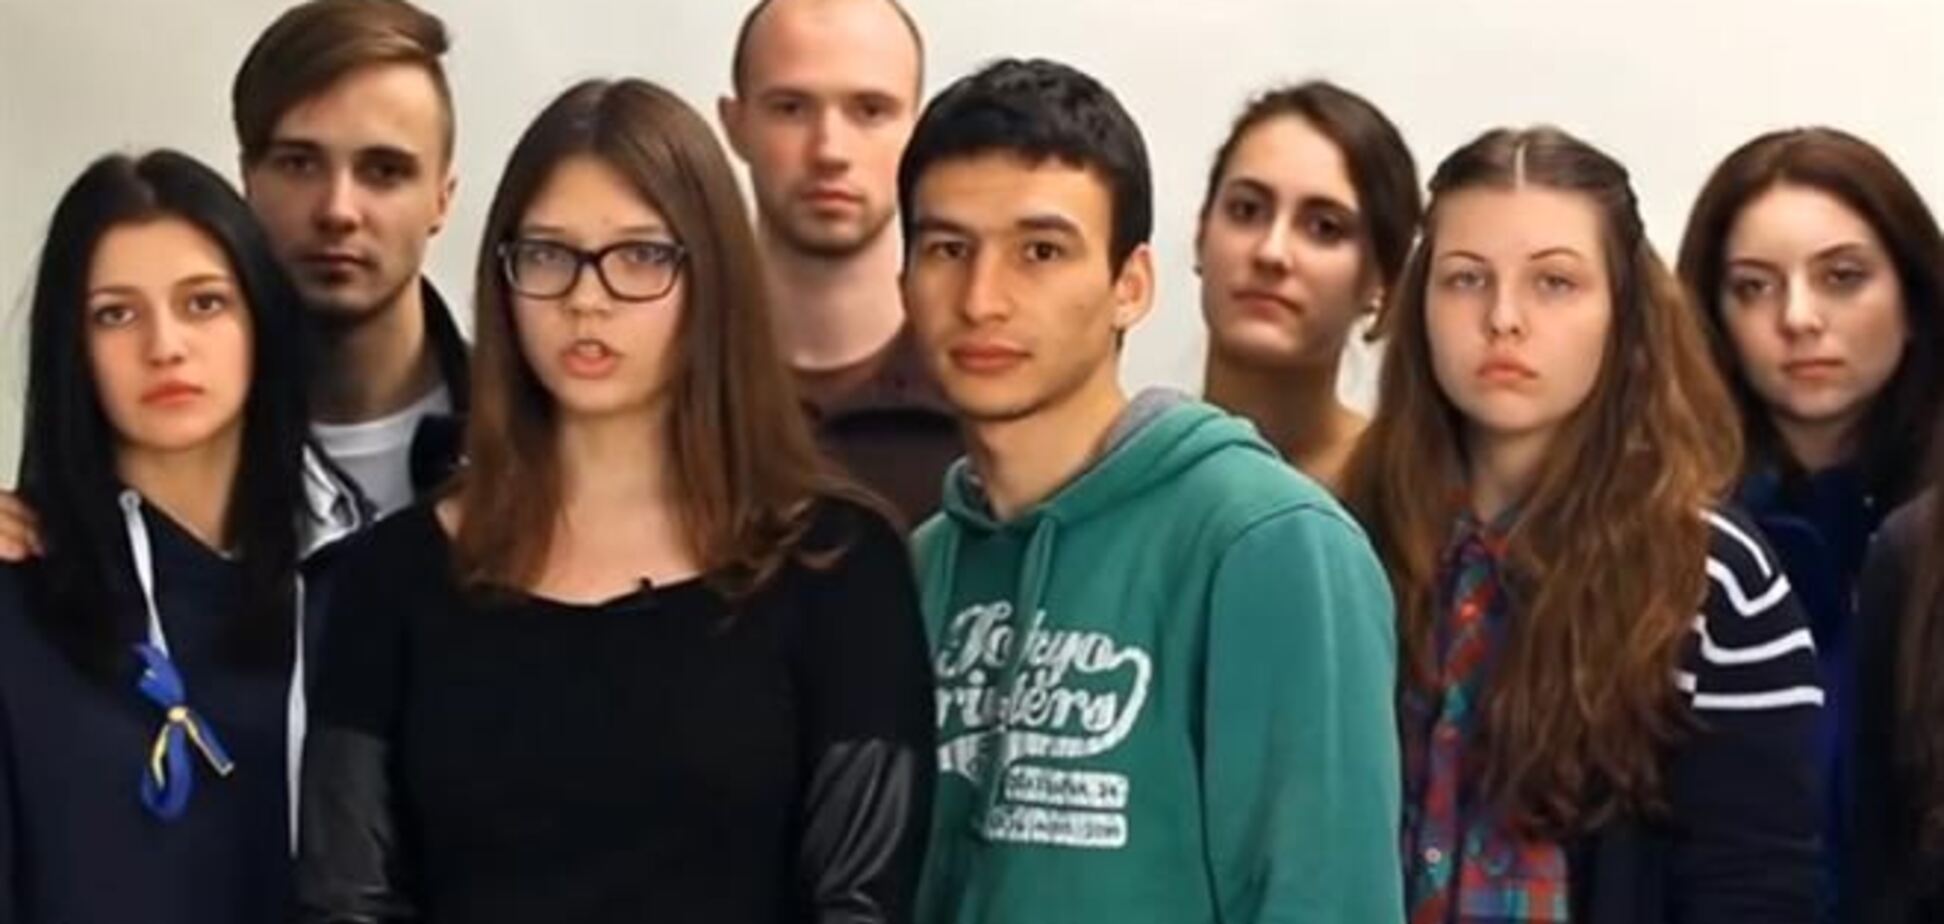 У мережі з'явилося відеозвернення студентів-кримчан, учнів у Києві, до жителів Криму